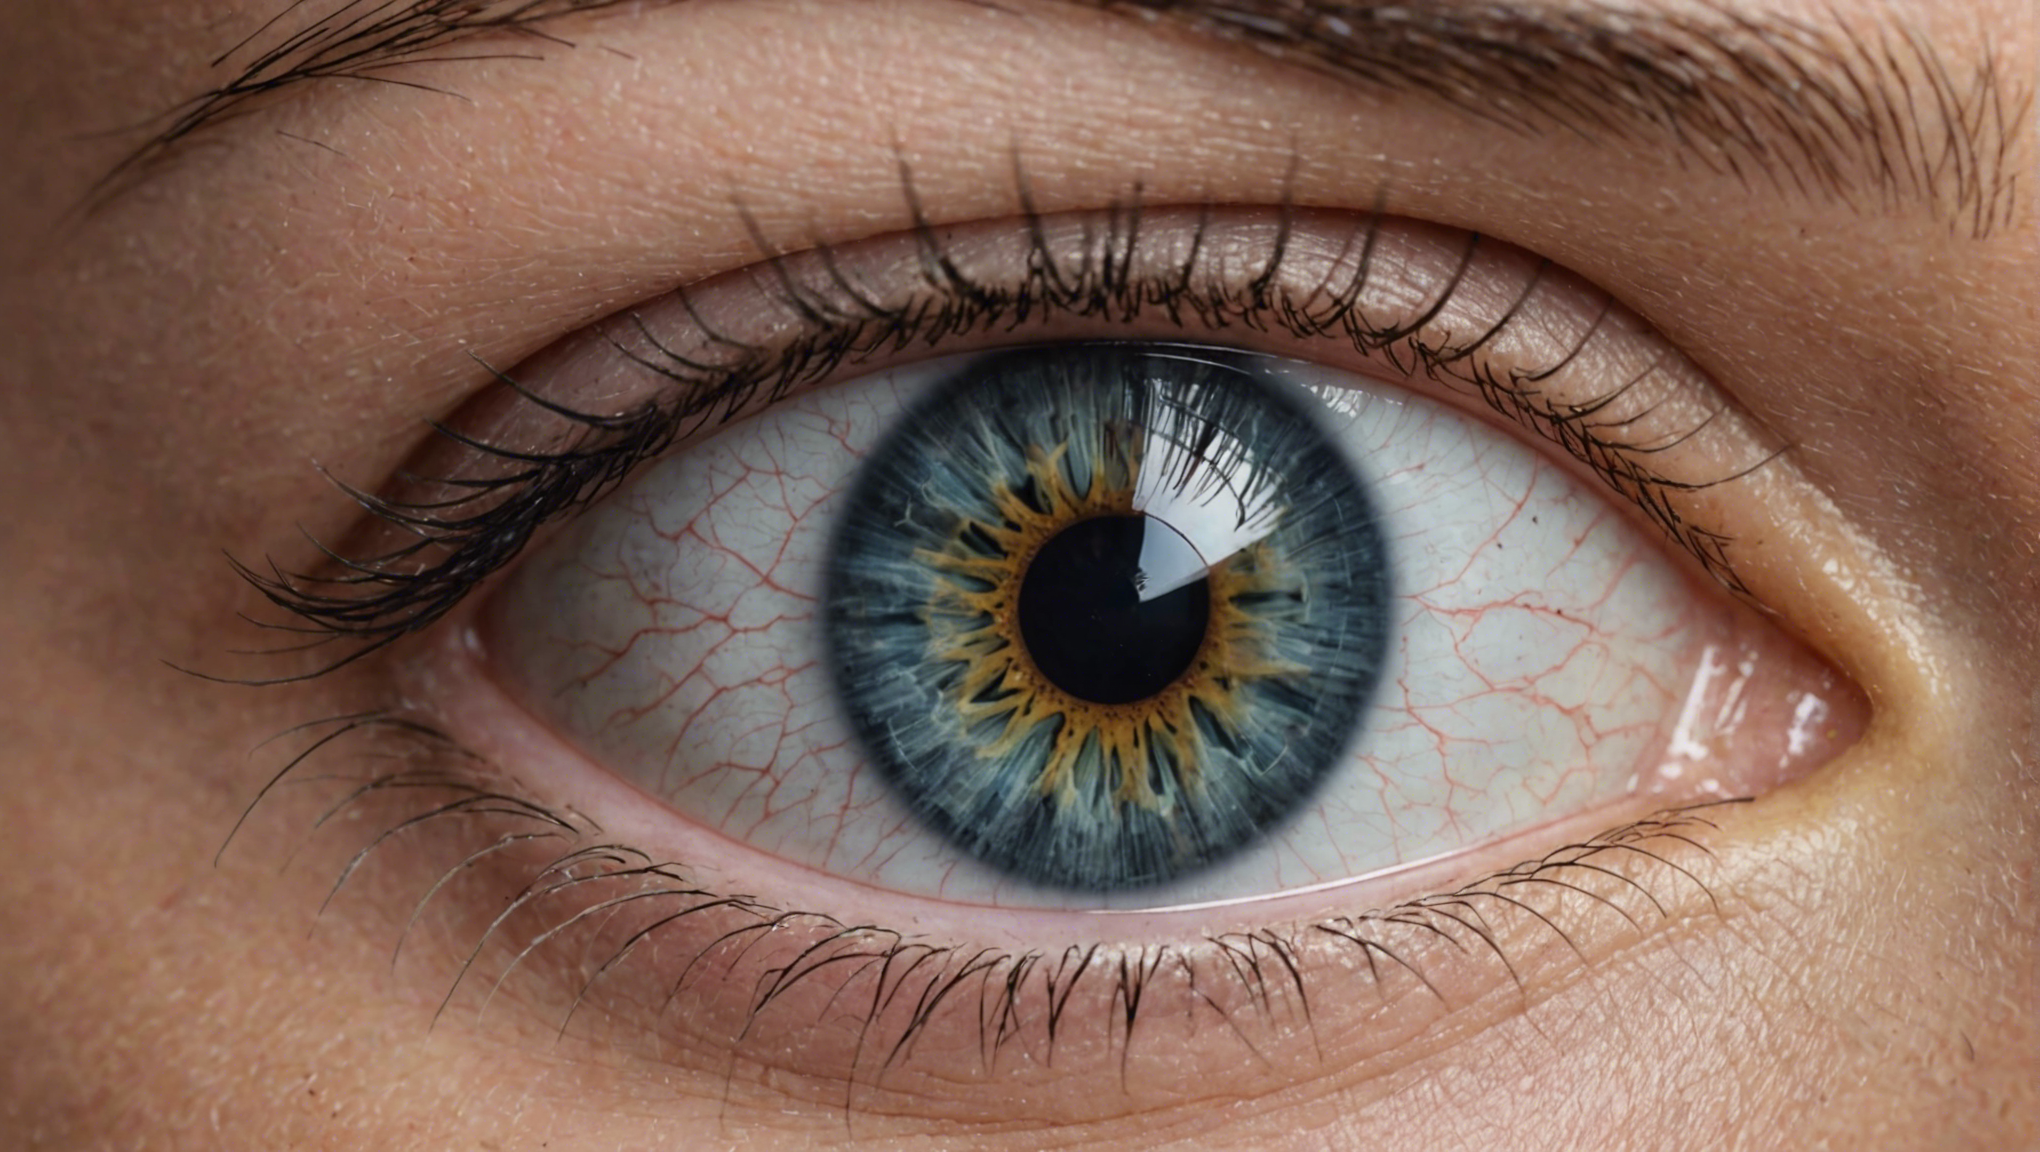 suivi médical et ajustements des yeux pour une vision optimale. découvrez nos services pour prendre soin de votre santé oculaire.